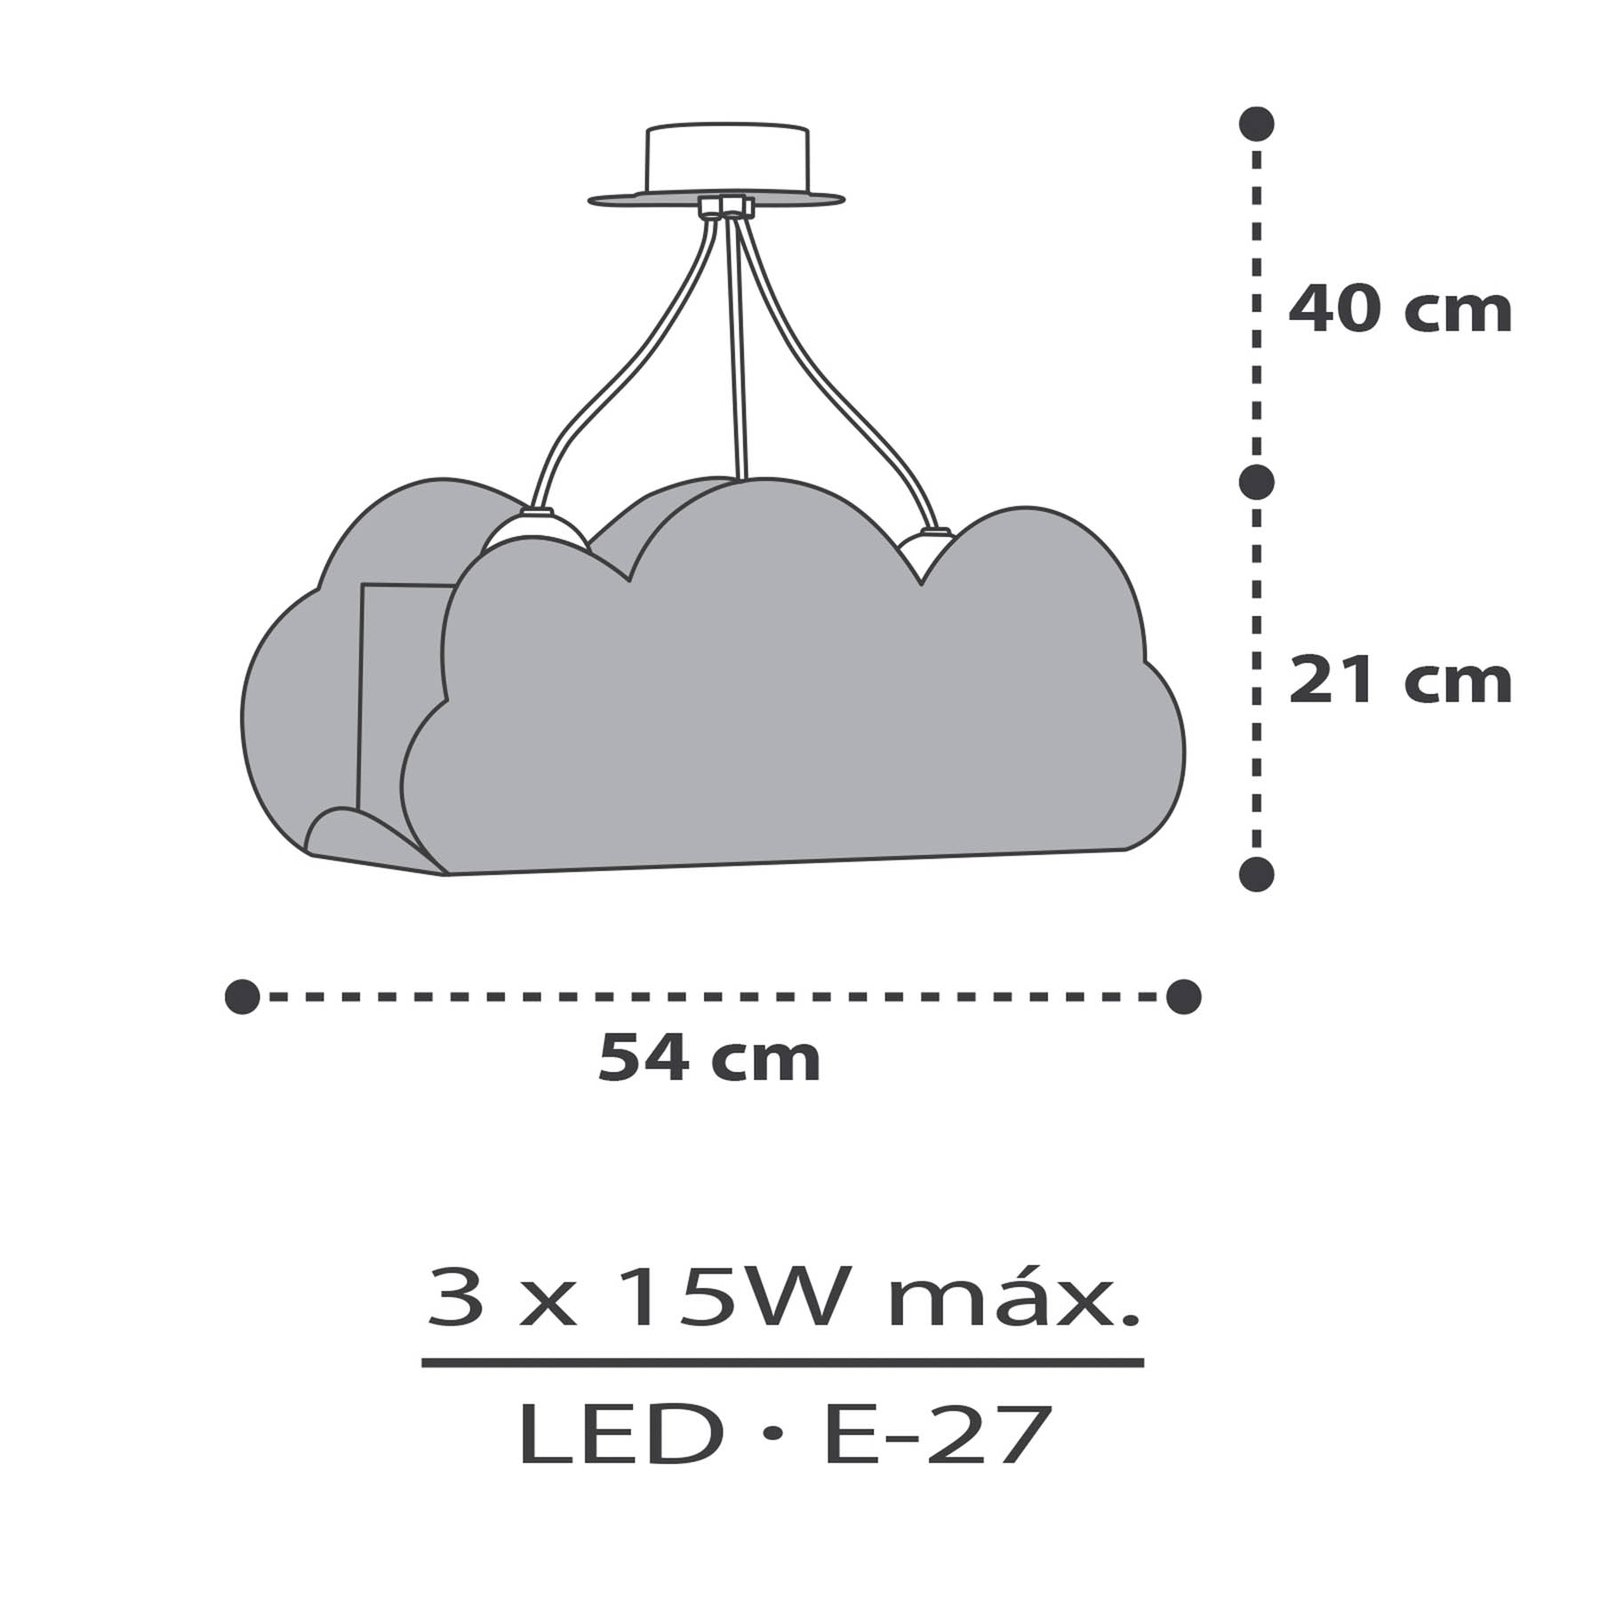 Lampă suspendată Dalber Cloud Grey în formă de nor, gri